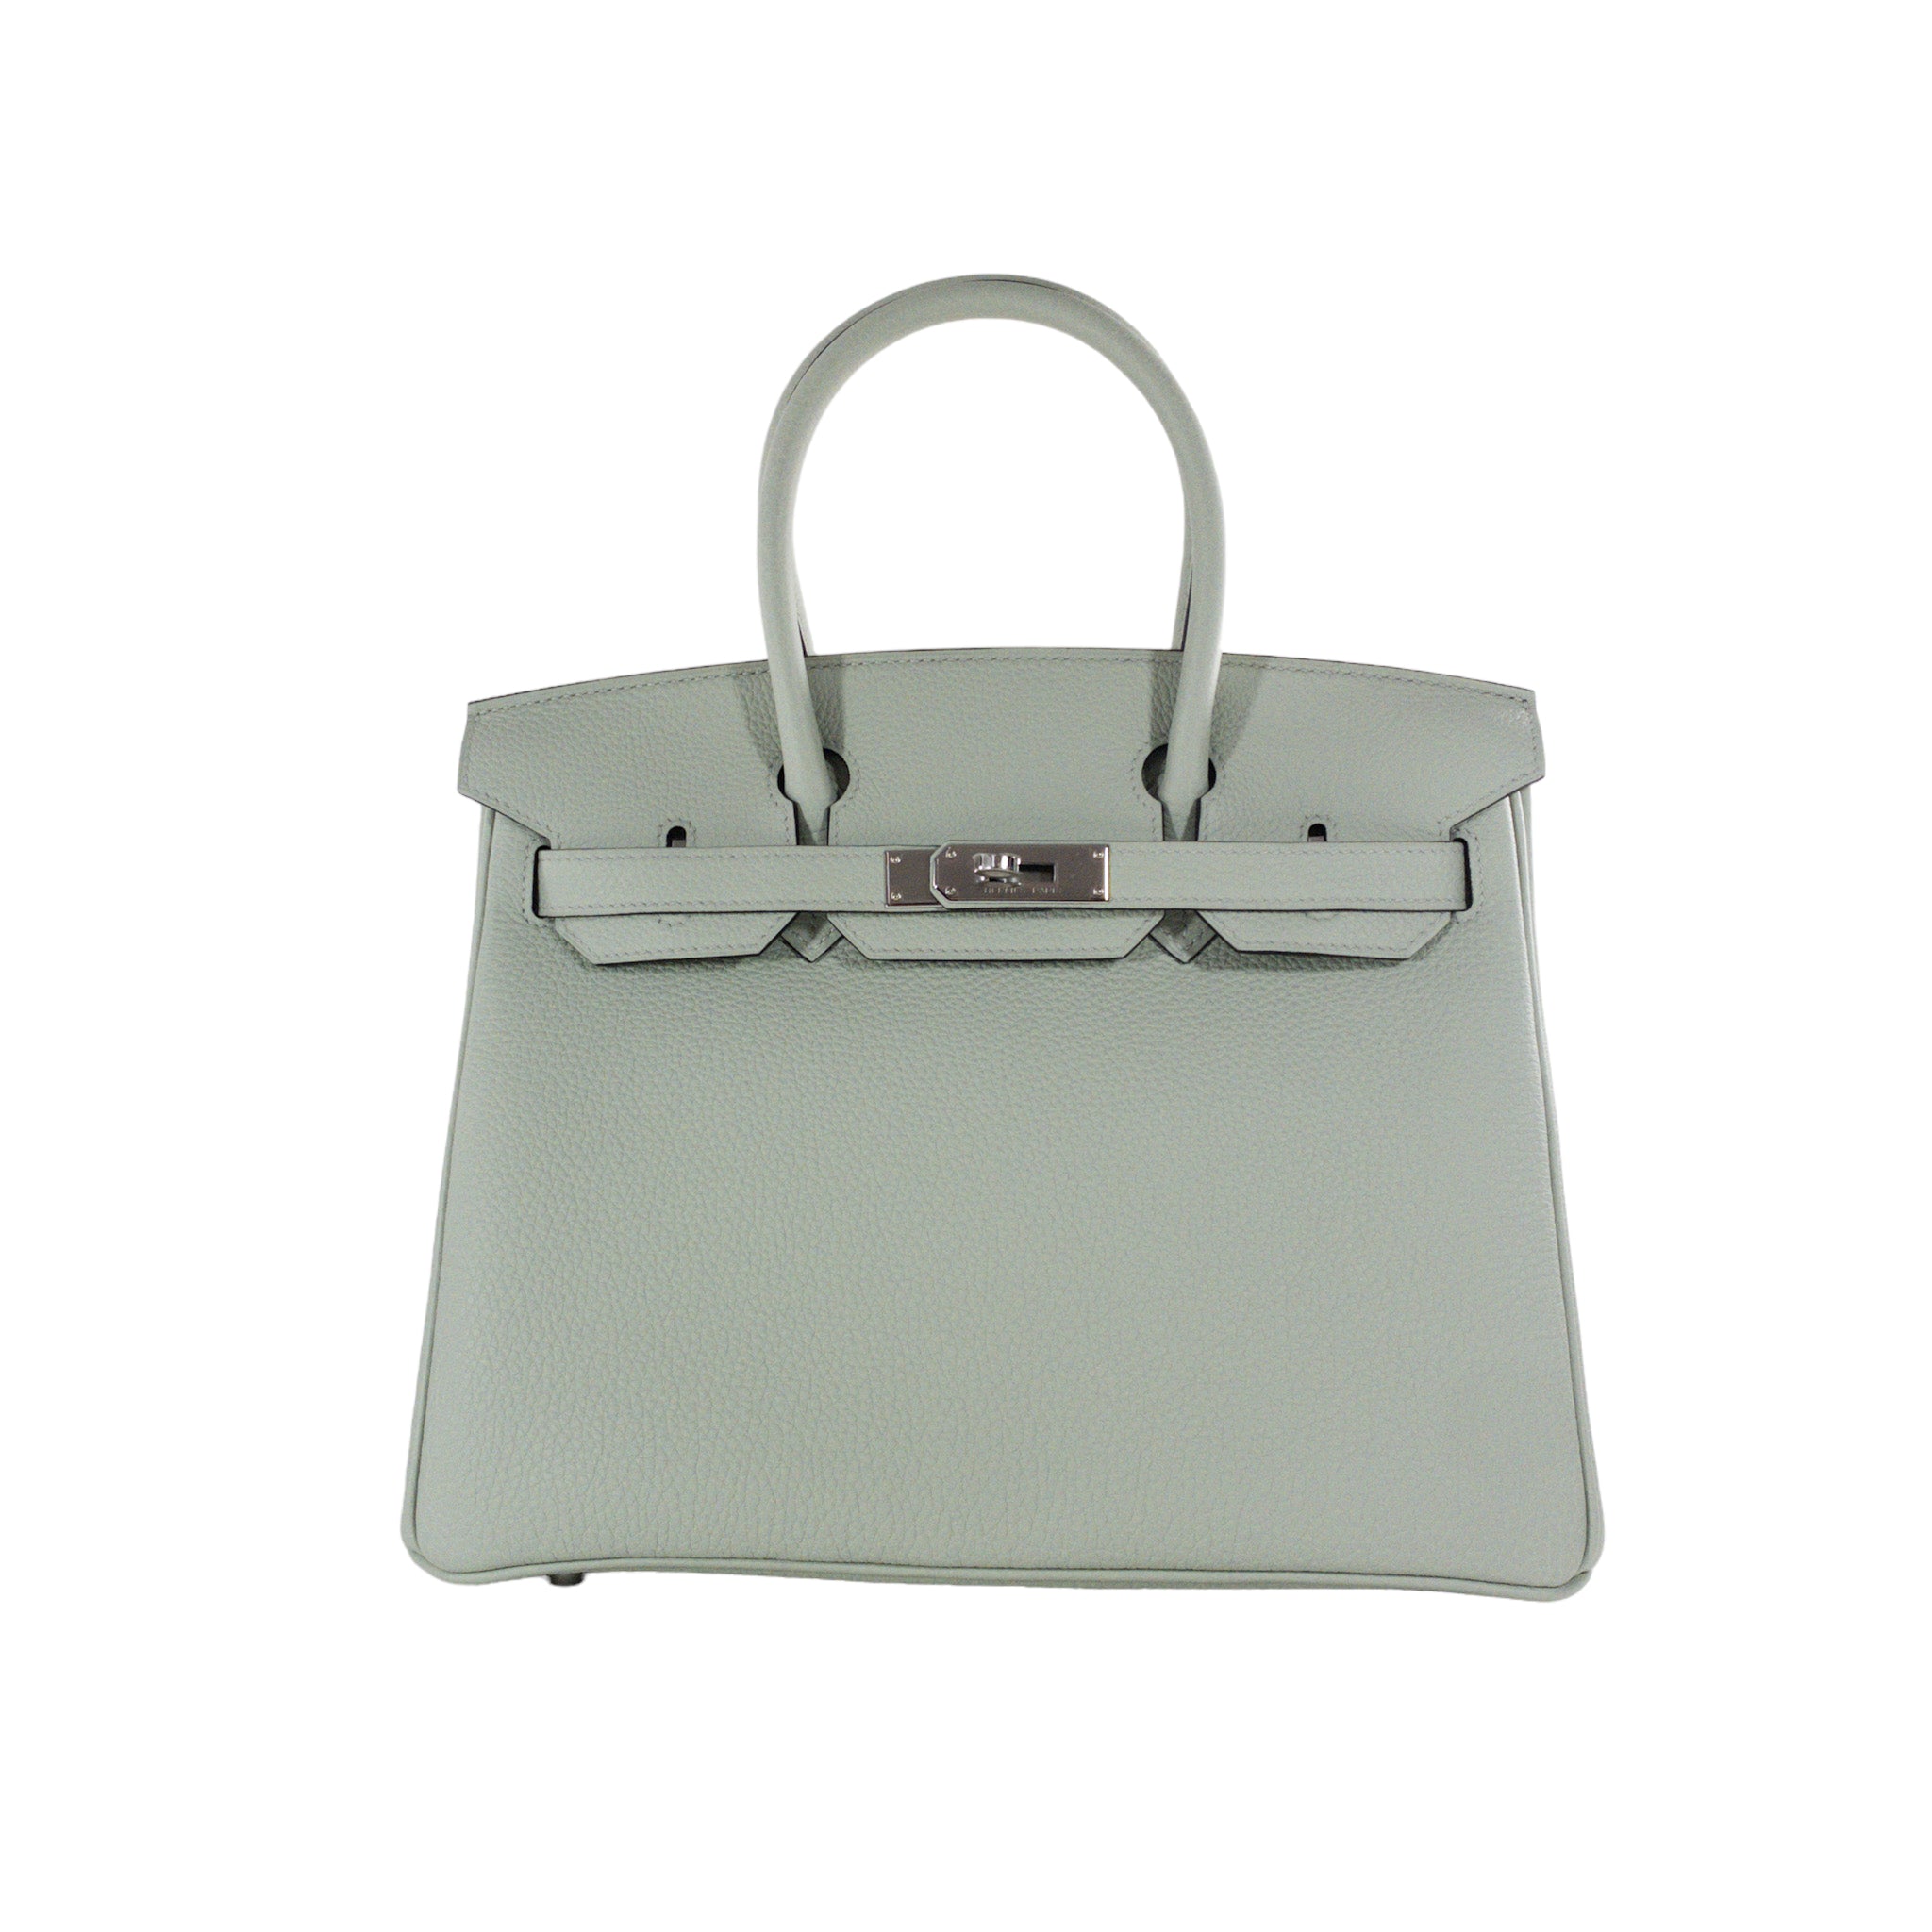 Hermes Birkin bag 30 Vert gris Togo leather Silver hardware